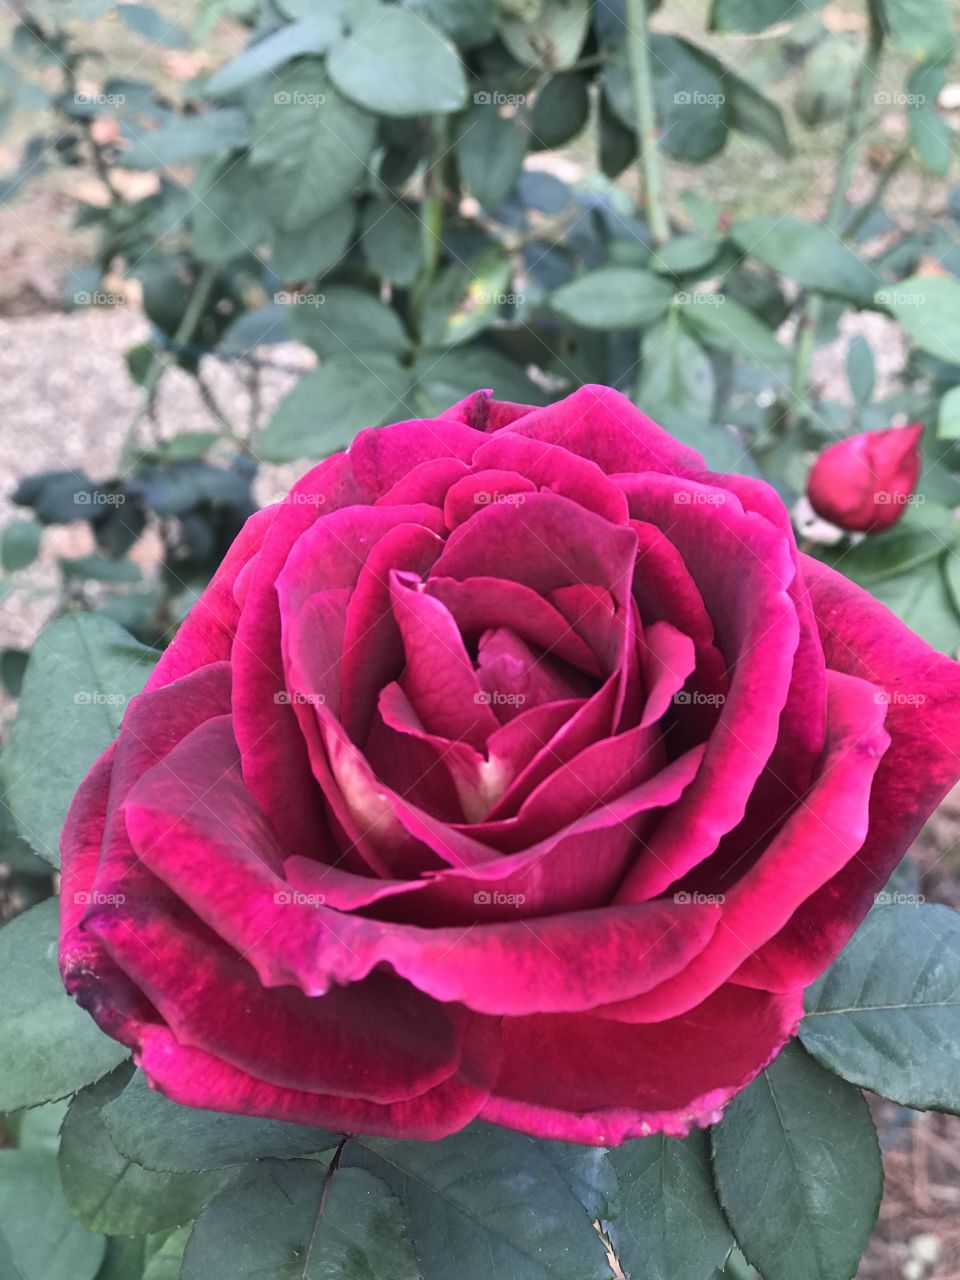 Dark pink rose